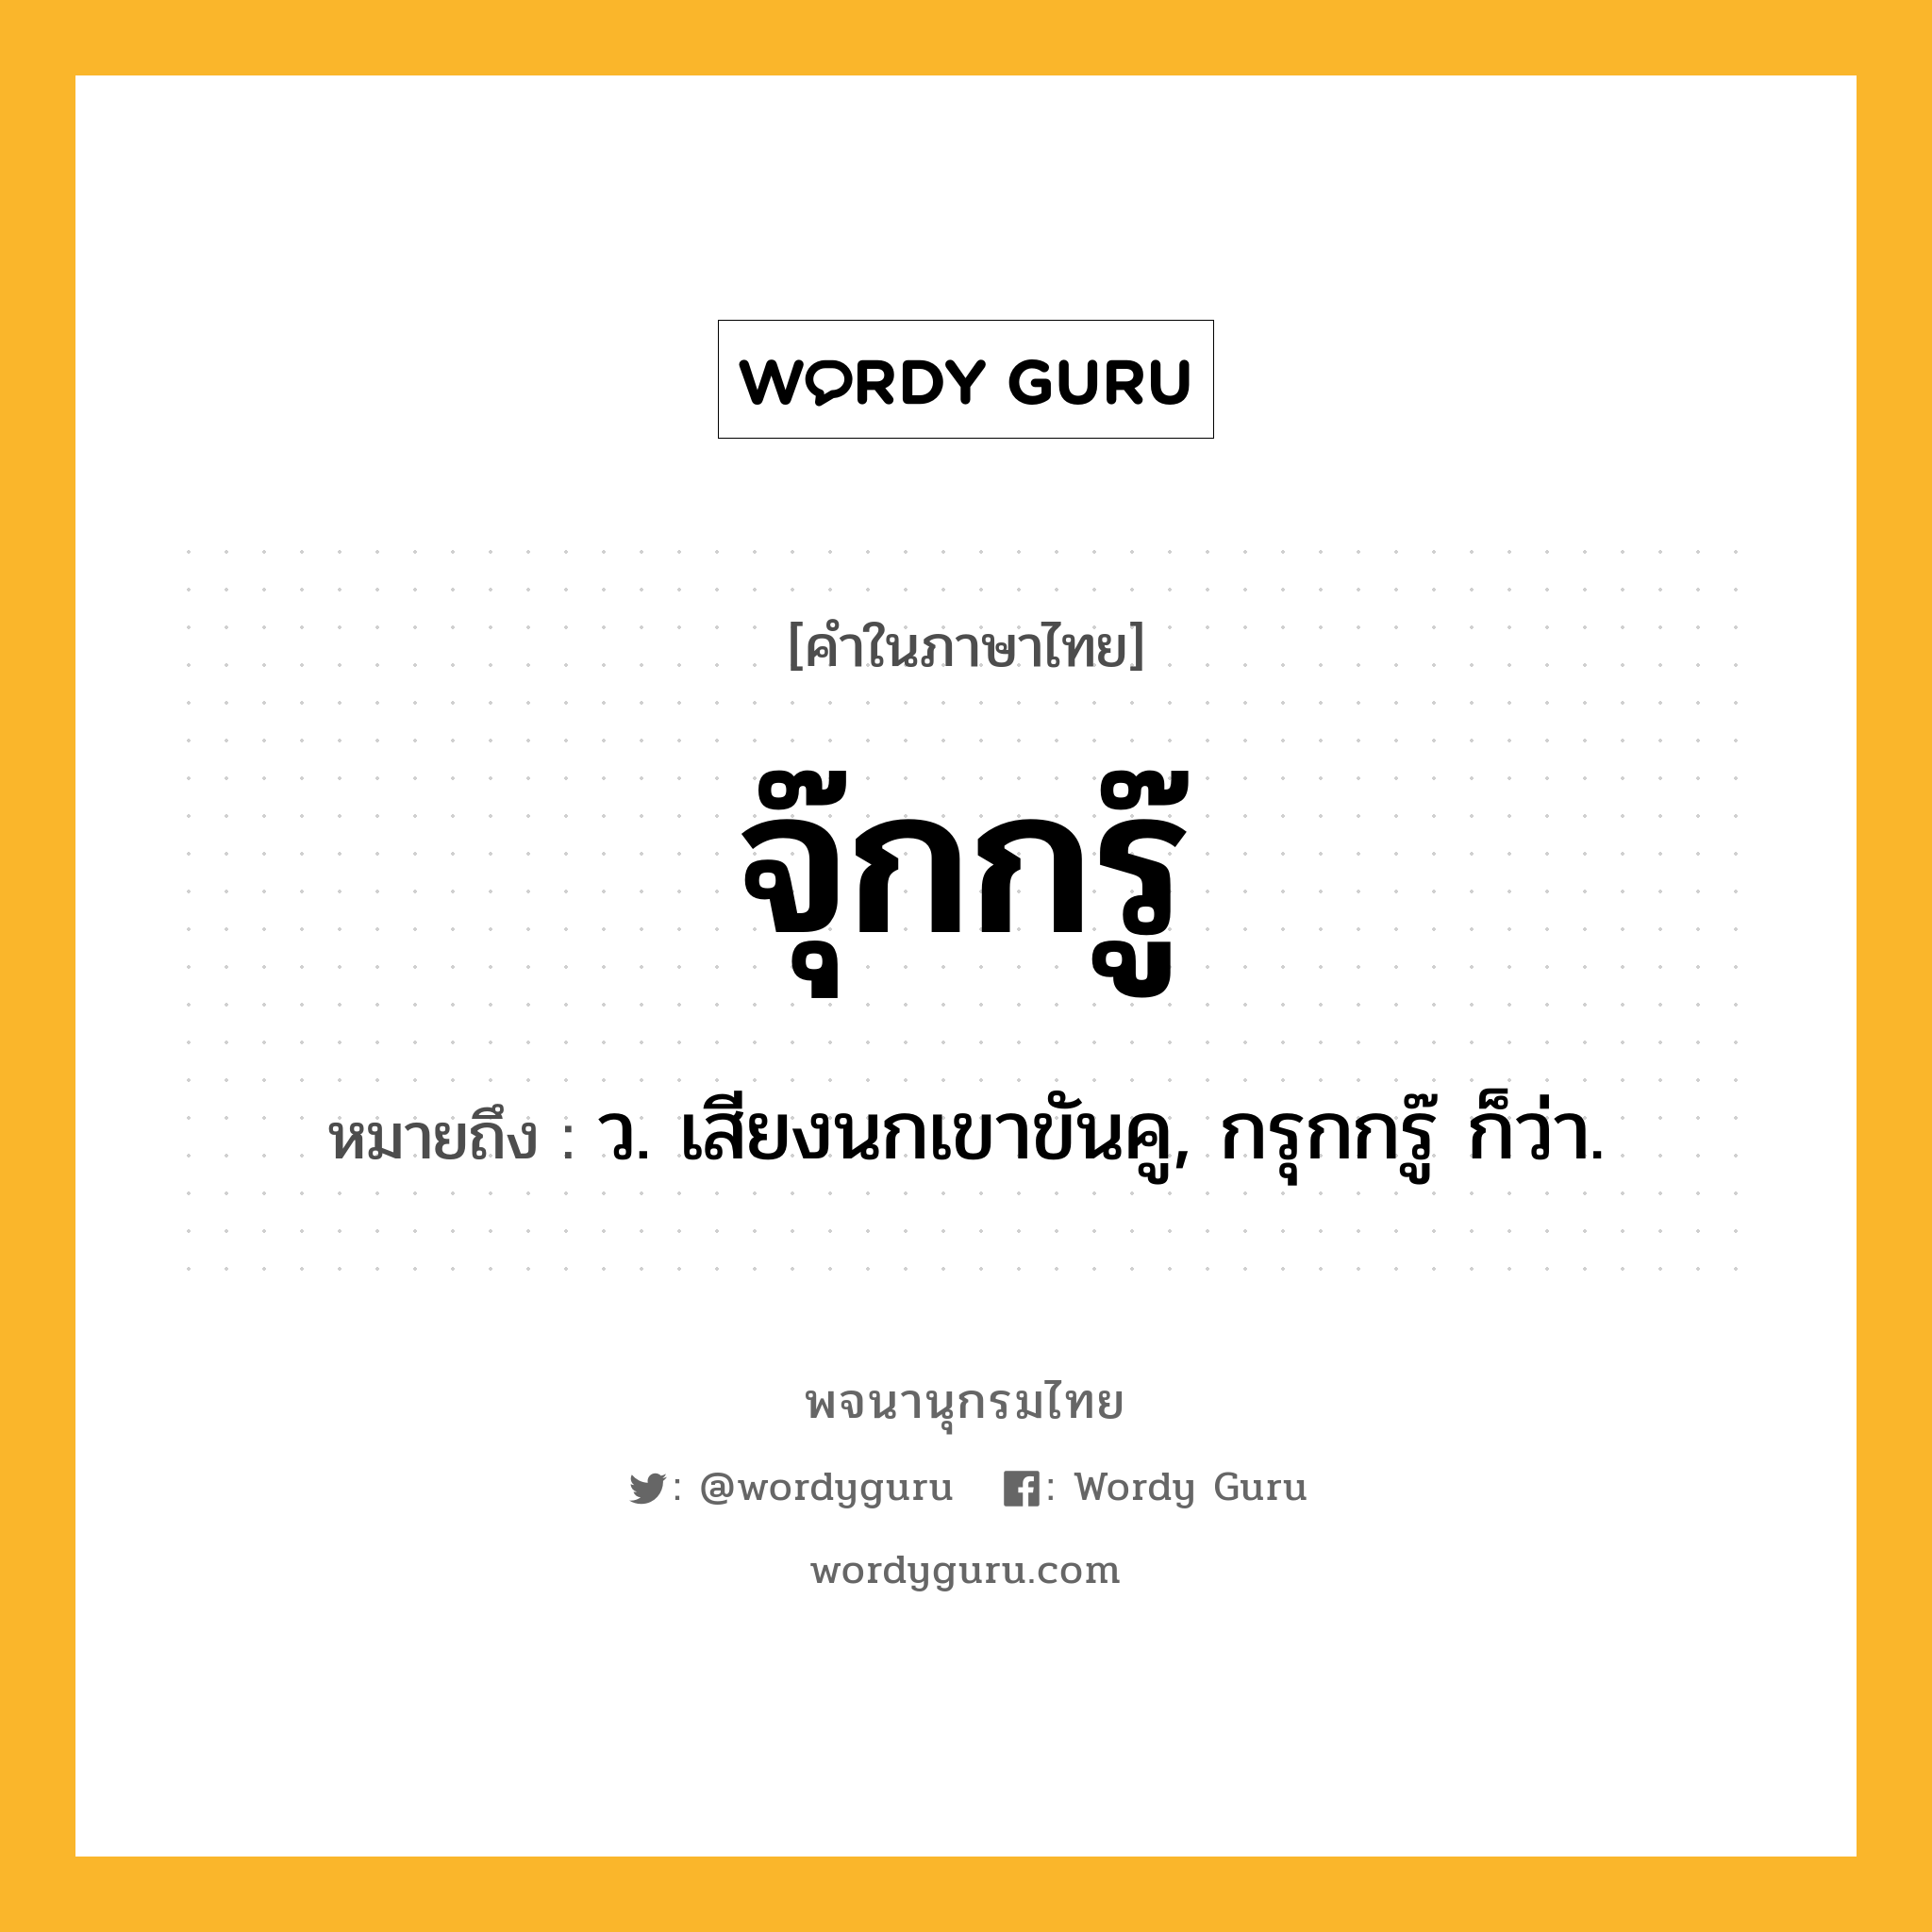 จุ๊กกรู๊ ความหมาย หมายถึงอะไร?, คำในภาษาไทย จุ๊กกรู๊ หมายถึง ว. เสียงนกเขาขันคู, กรุกกรู๊ ก็ว่า.